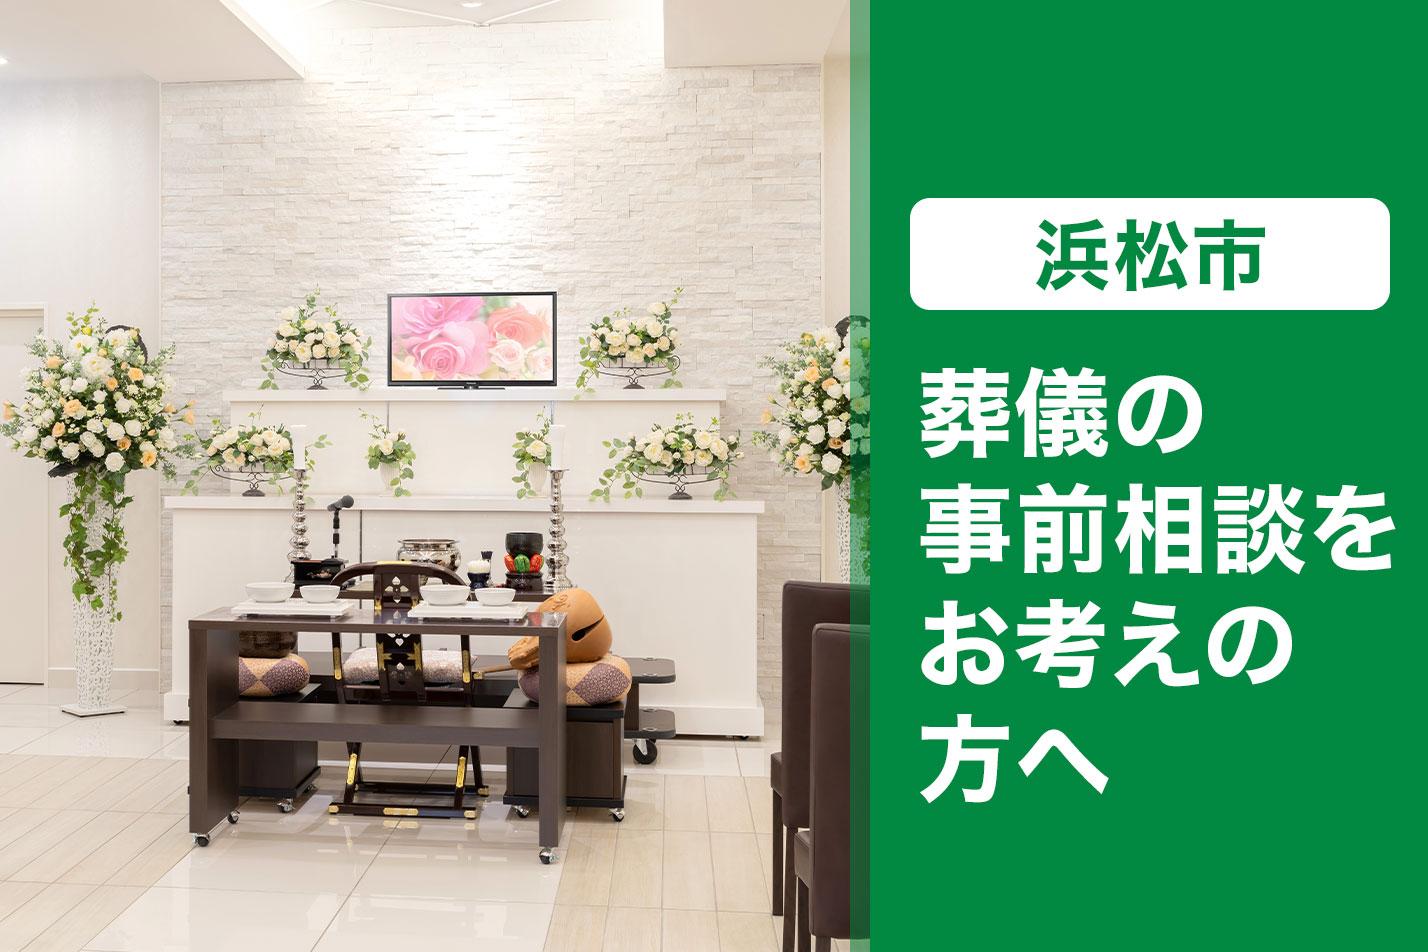  東大和市で葬儀の事前相談をお考えの方へのイメージ画像